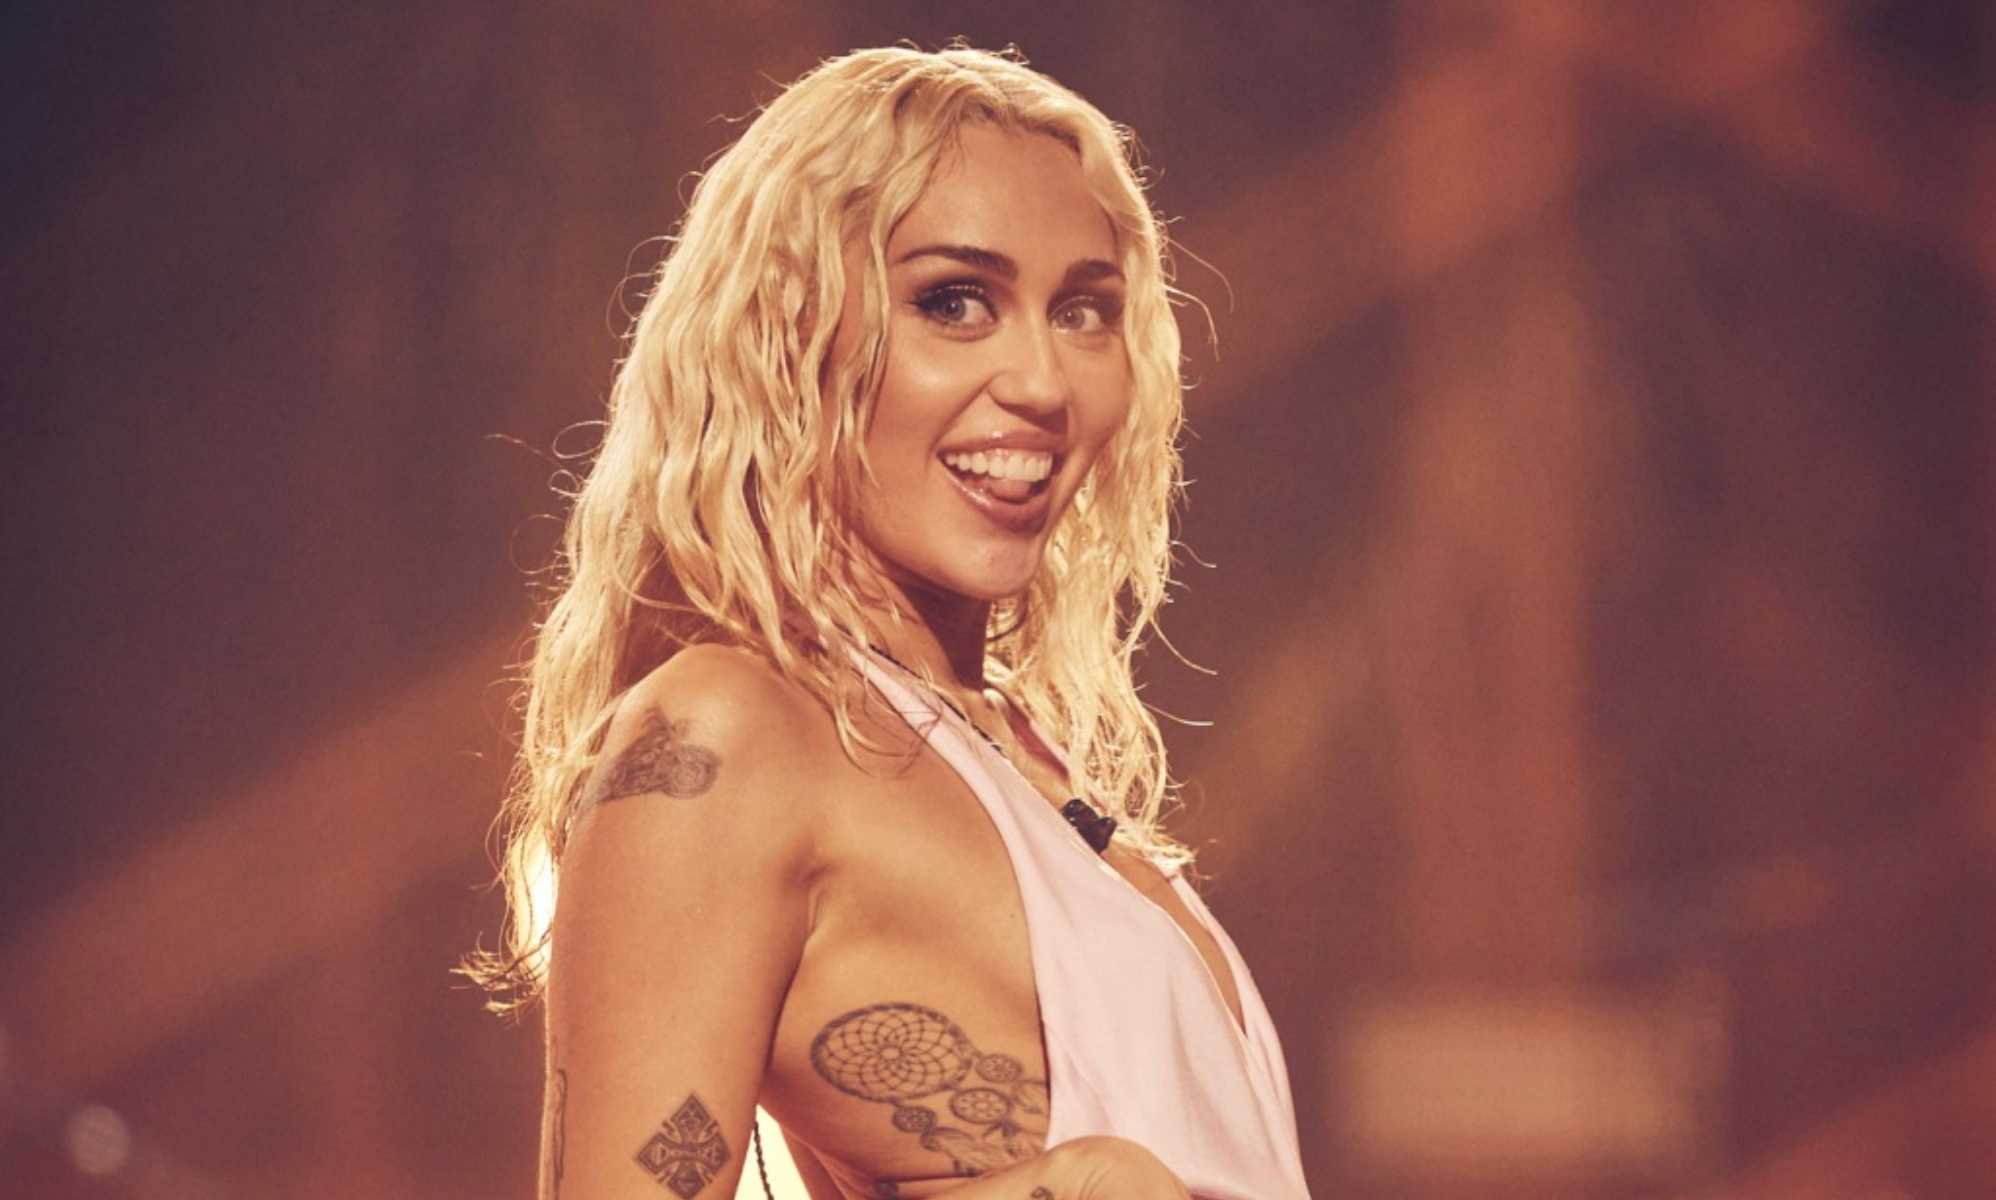 La canción River de Miley Cyrus está inspirada en una fiesta gay